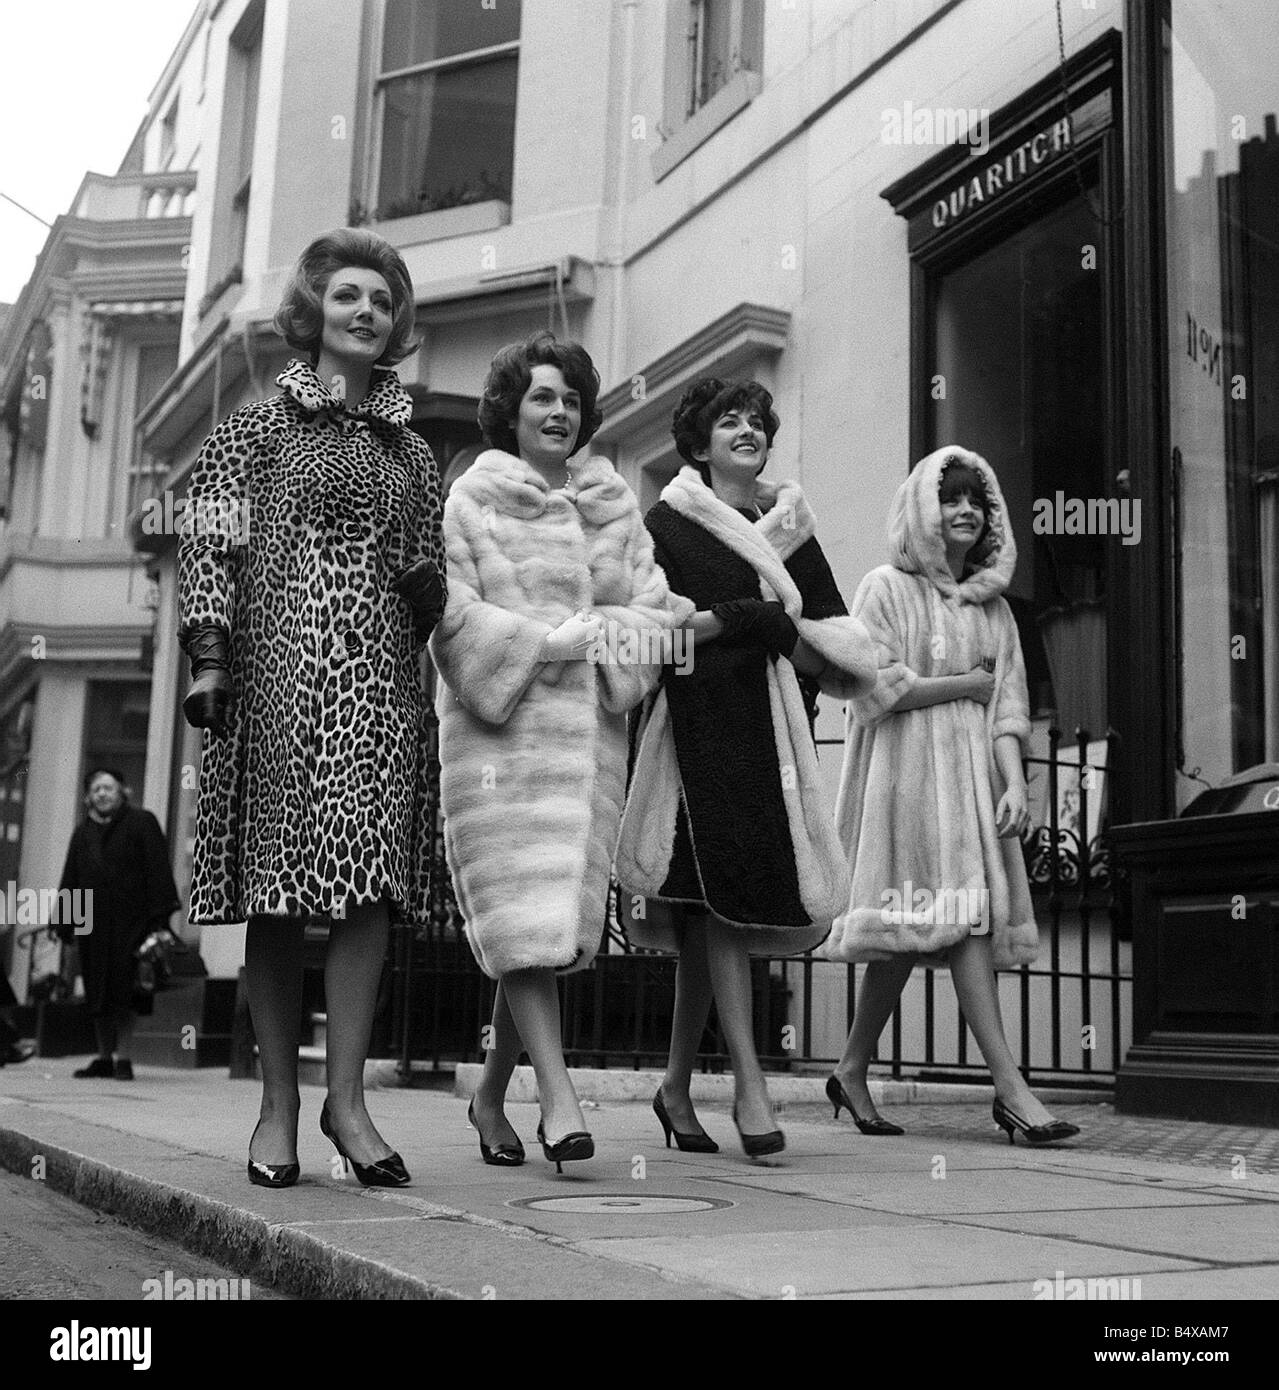 Moda abrigos de piel Feb 1962 modelos en el West End de Londres modelo incluyendo los abrigos de pieles de leopardo y de visón Foto de stock